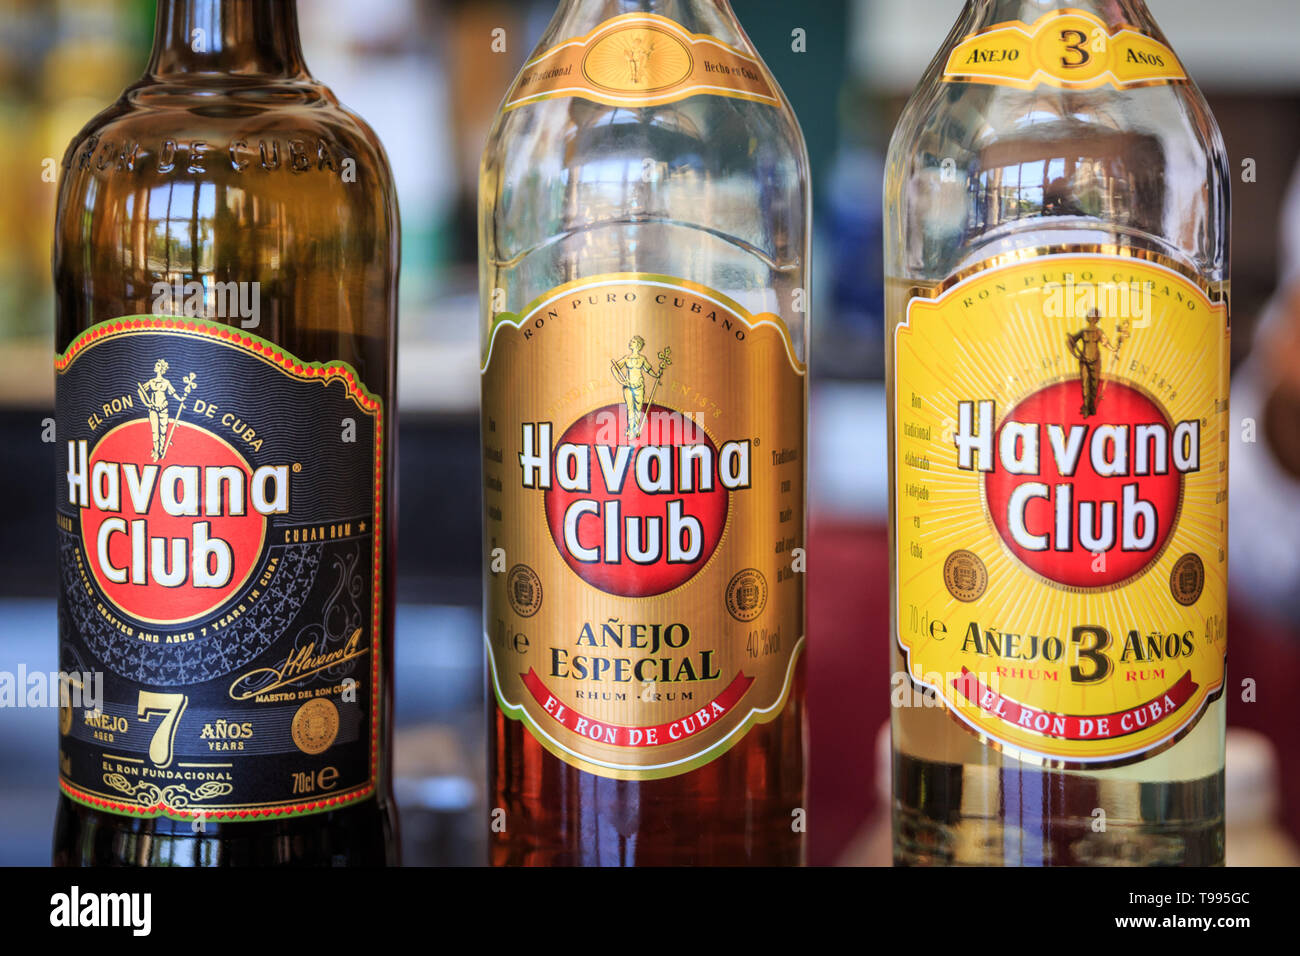 Botellas de ron cubano Havana Club y etiquetas, 3 años, 7 años y, en  especial, Cuba Fotografía de stock - Alamy